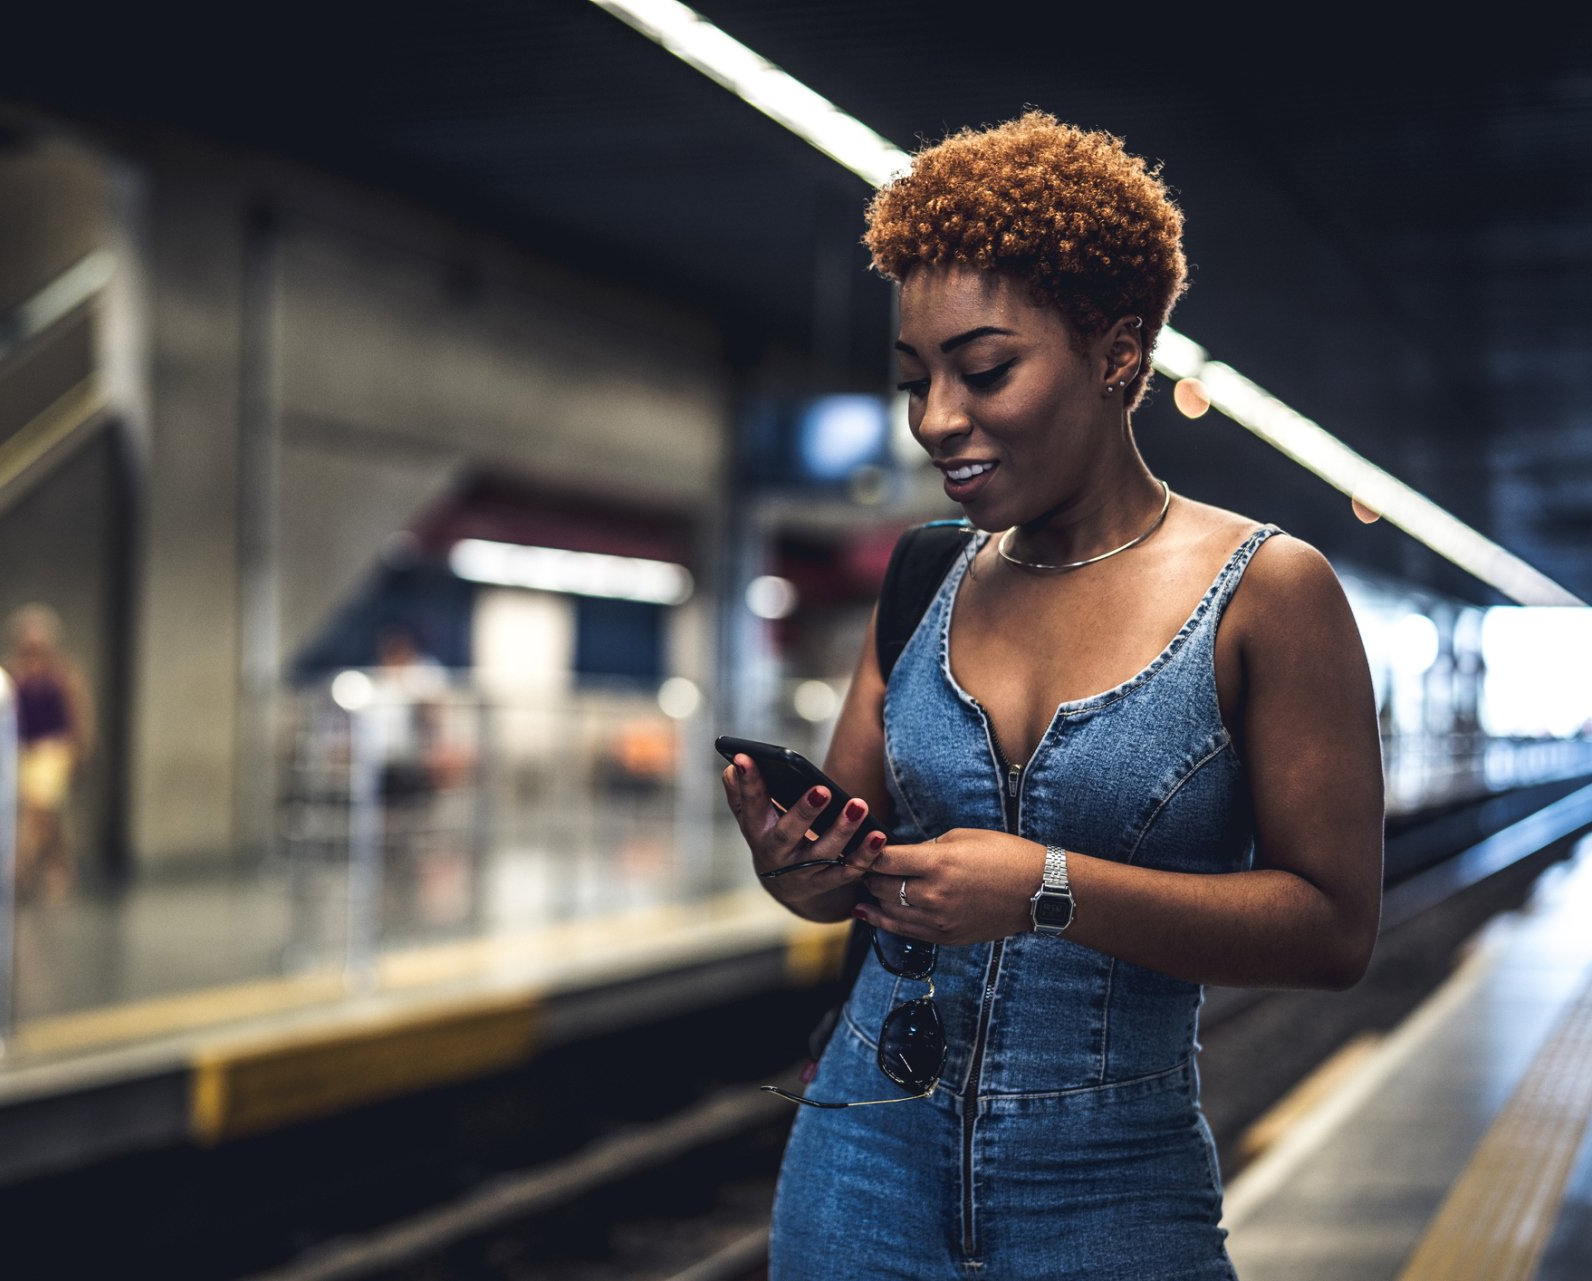 Mulher conhecendo os compromissos da XP Educação no celular enquanto espera pelo metrô